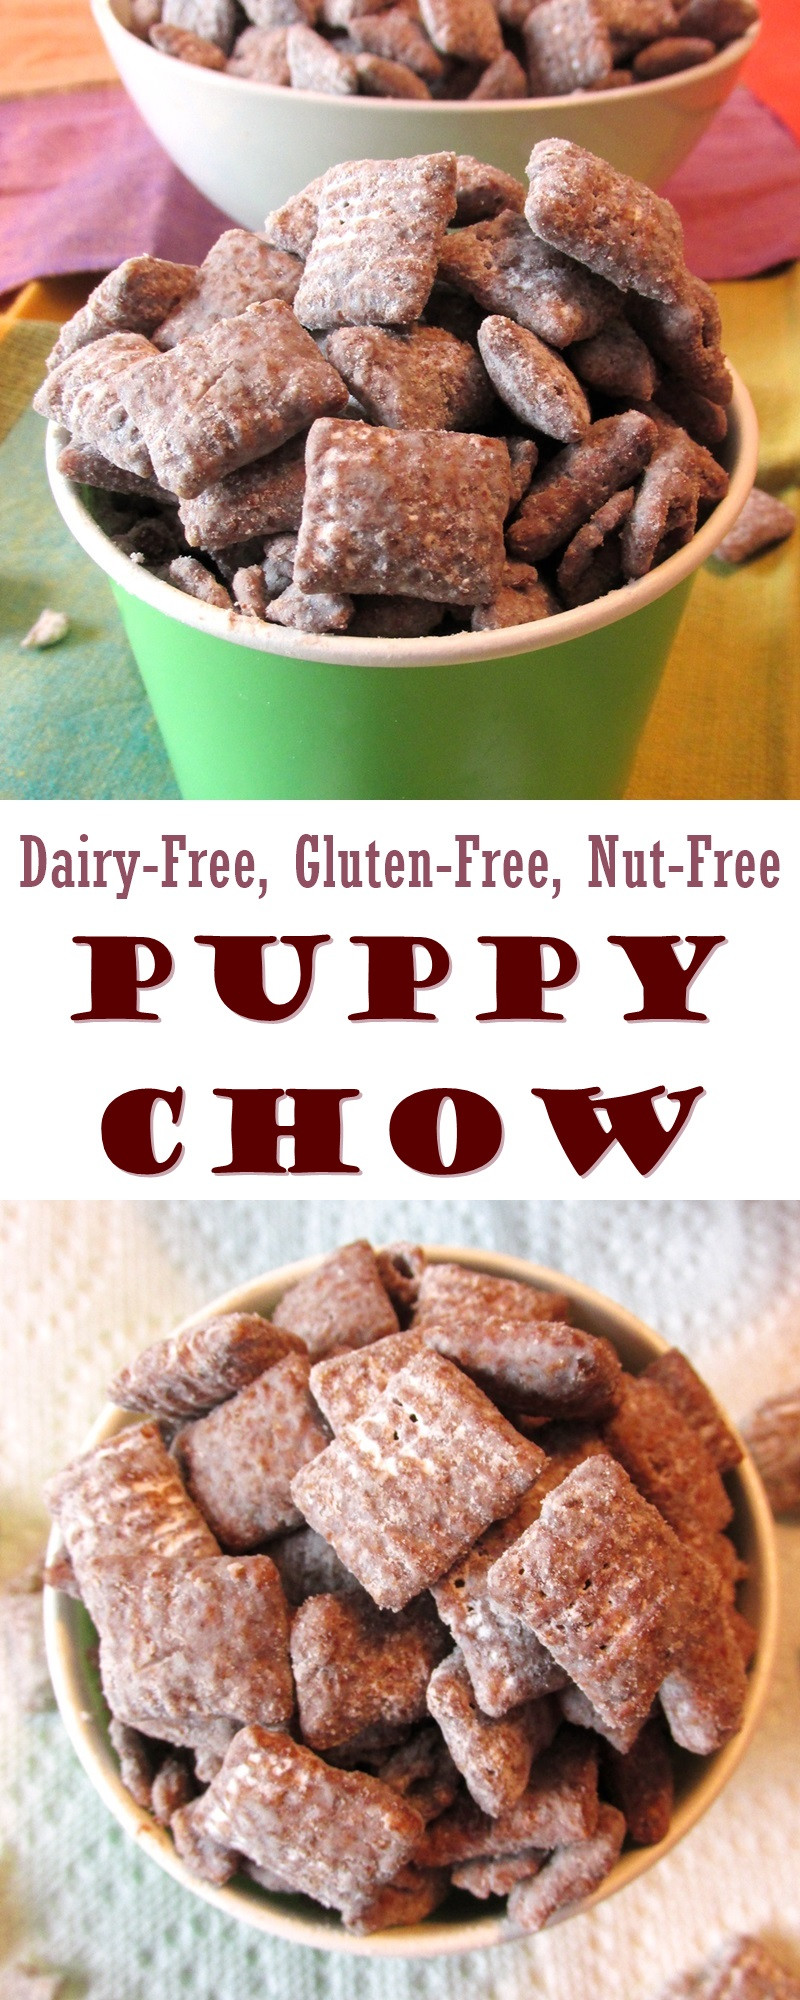 Gluten Free Dairy Free Nut Free Desserts
 Puppy Chow Snack Mix Recipe Dairy Free Gluten Free & Nut